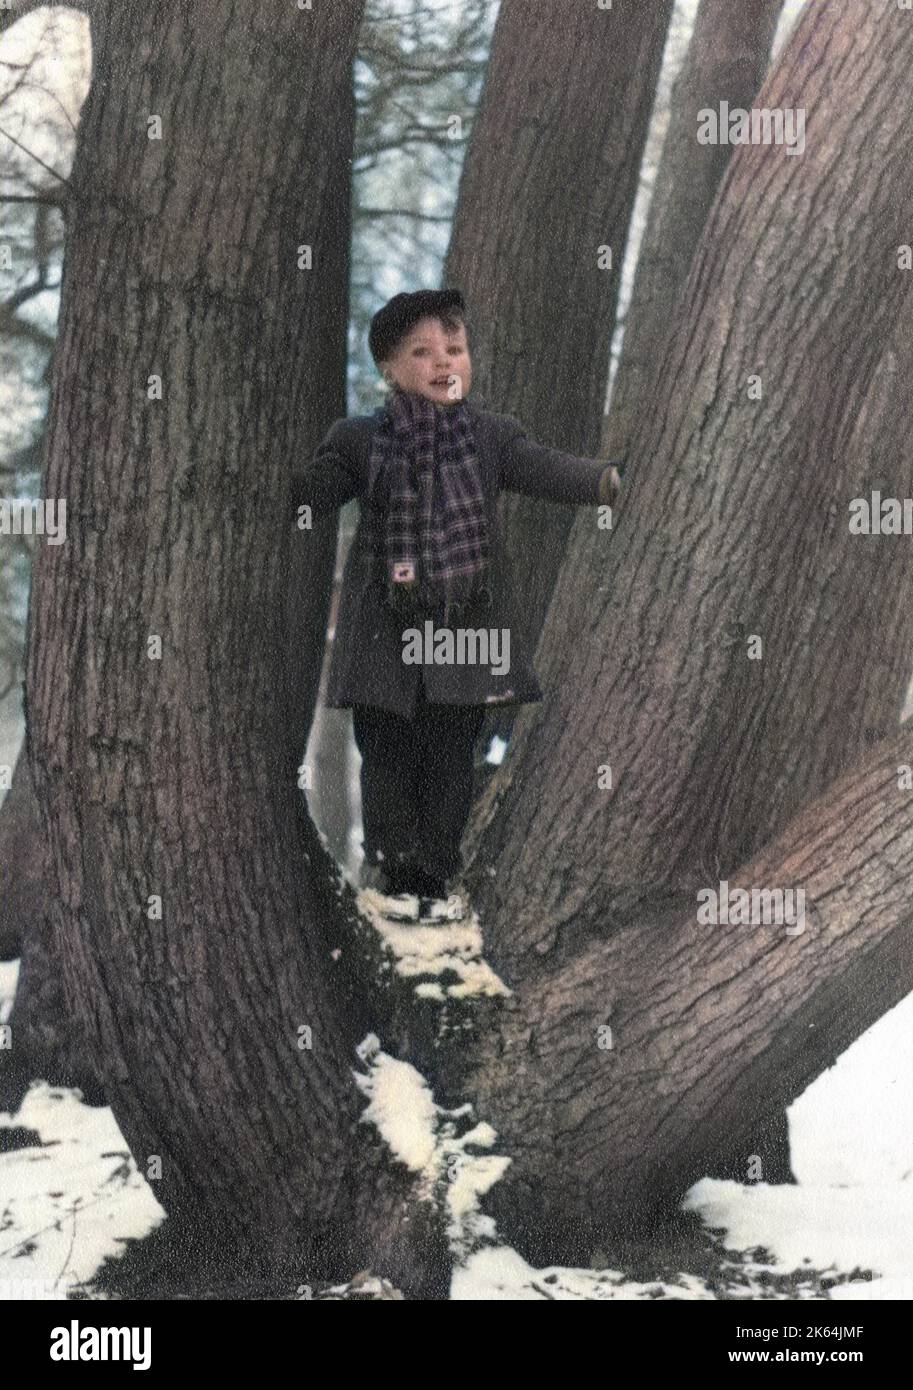 Junge Junge stand inmitten der unterschiedlichen Stämme einer Eiche Datum: Anfang der 1950er Jahre Stockfoto